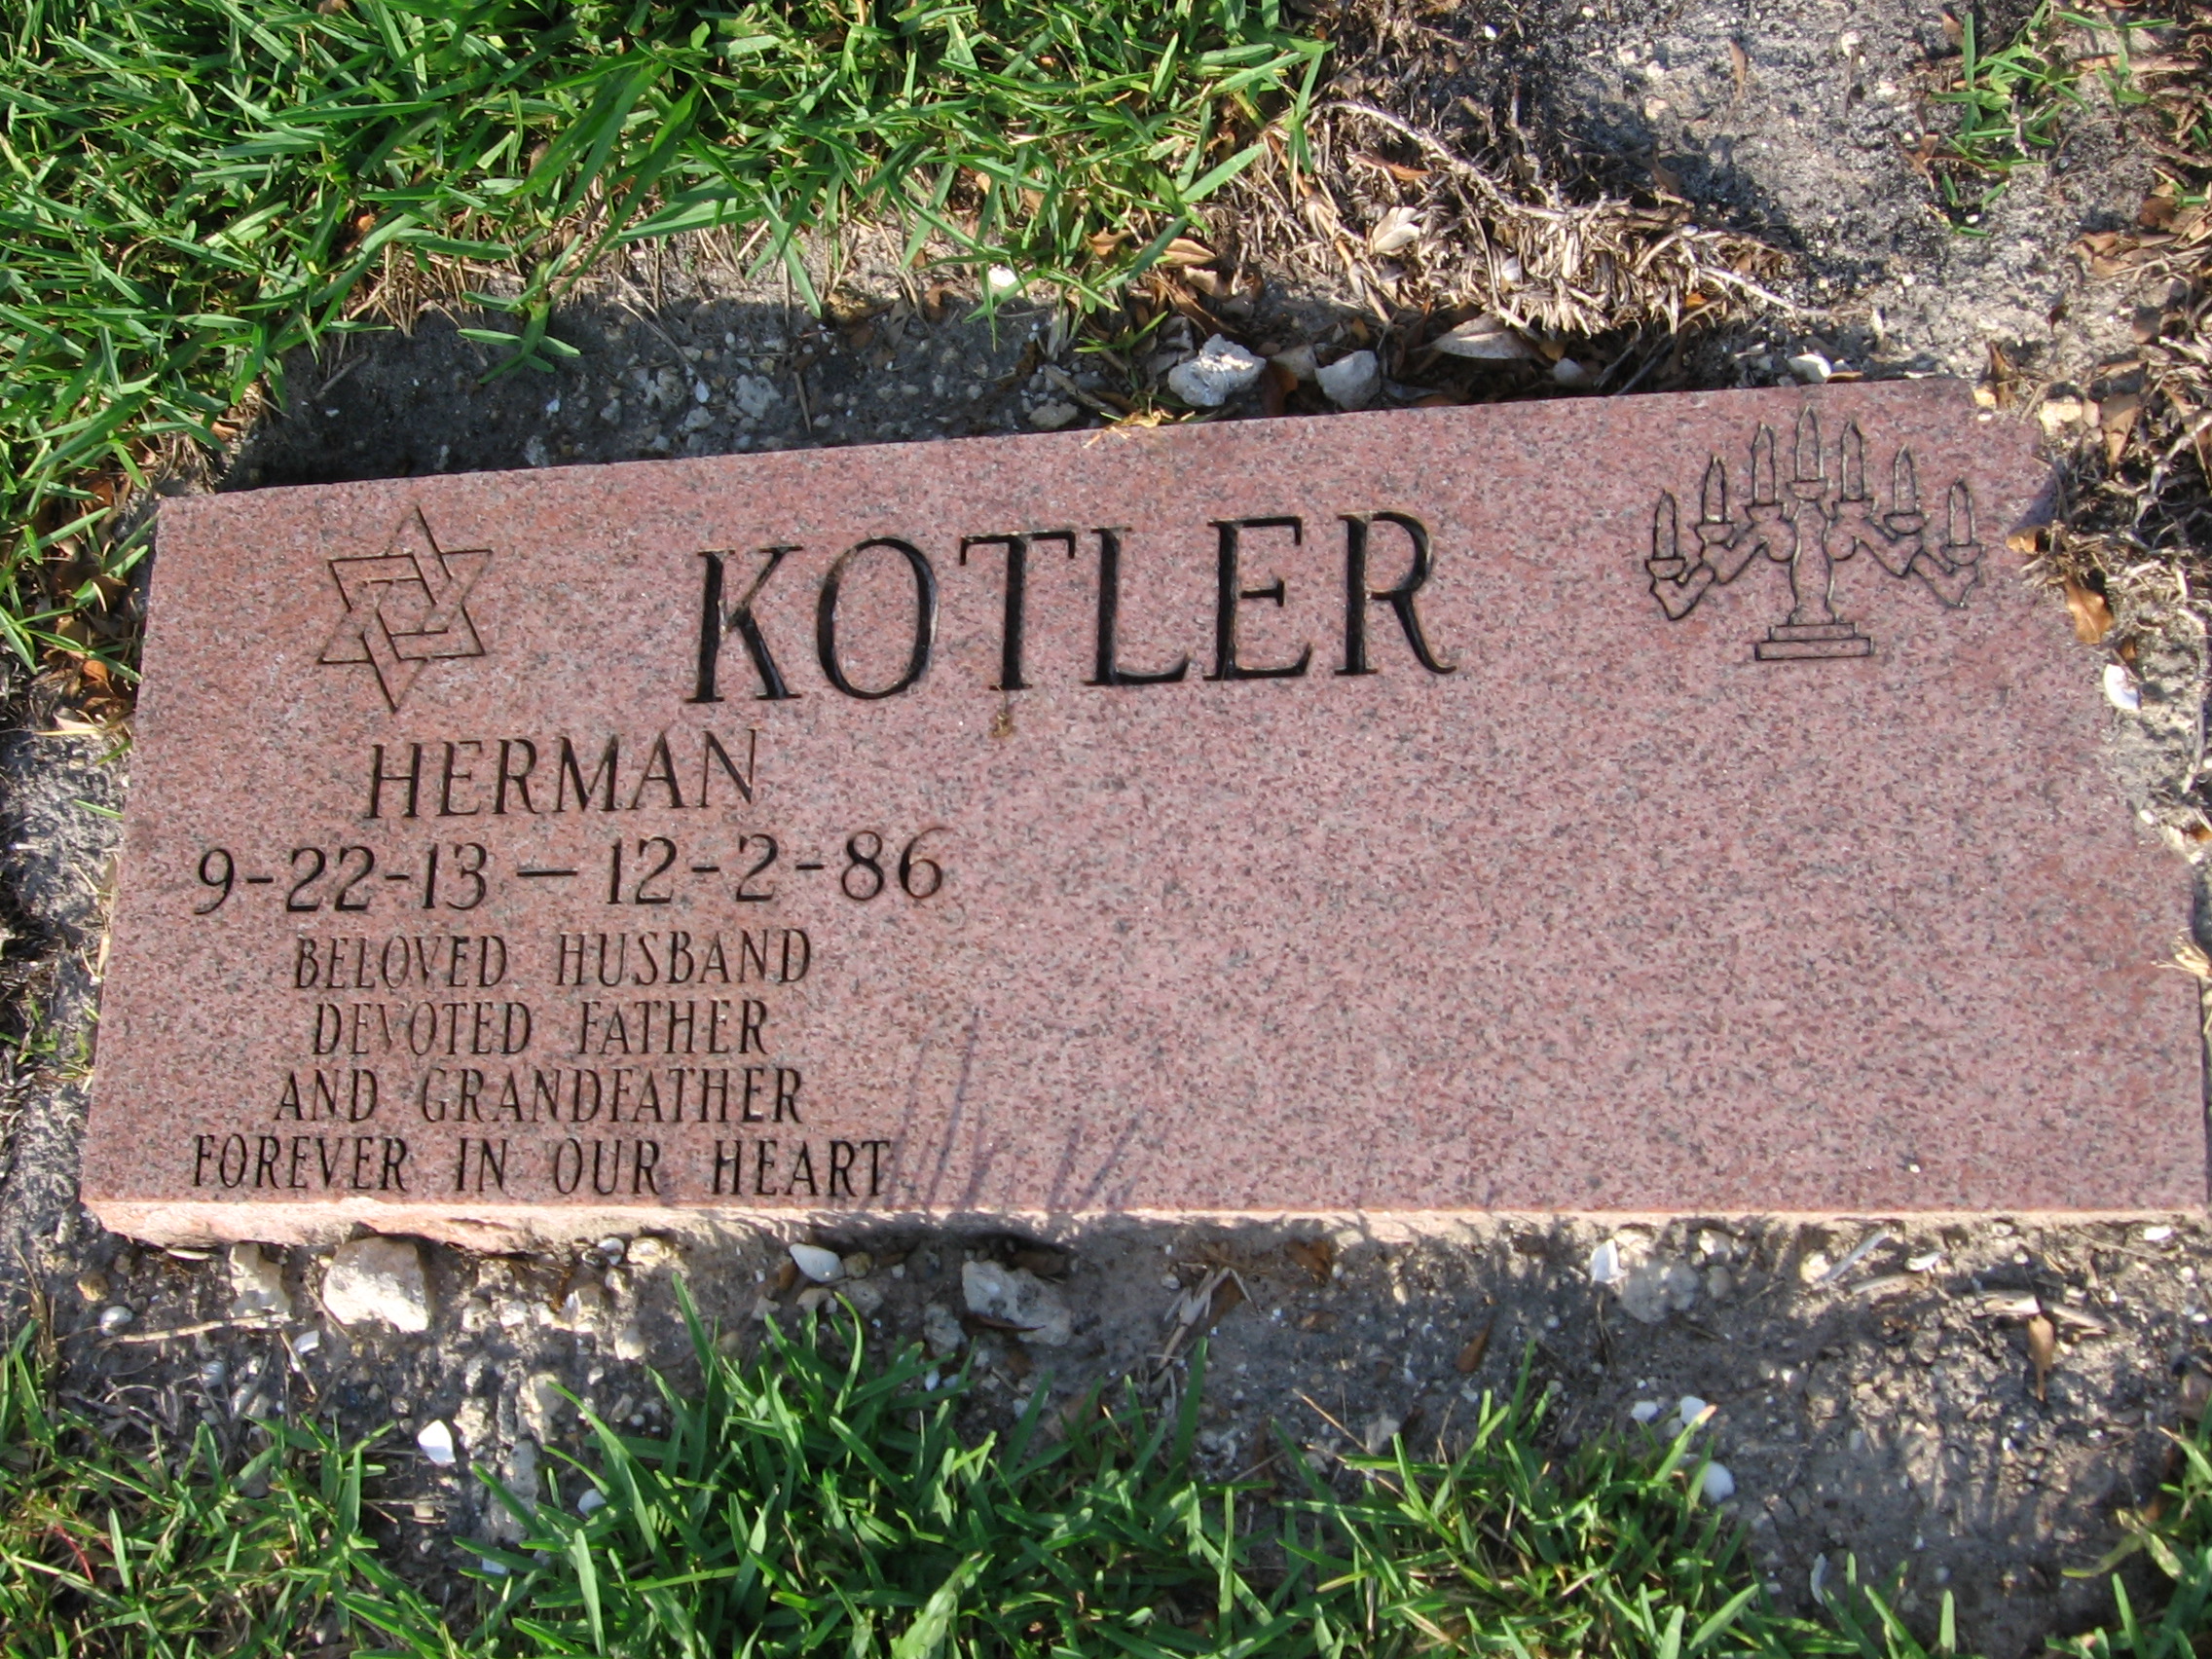 Herman Kotler